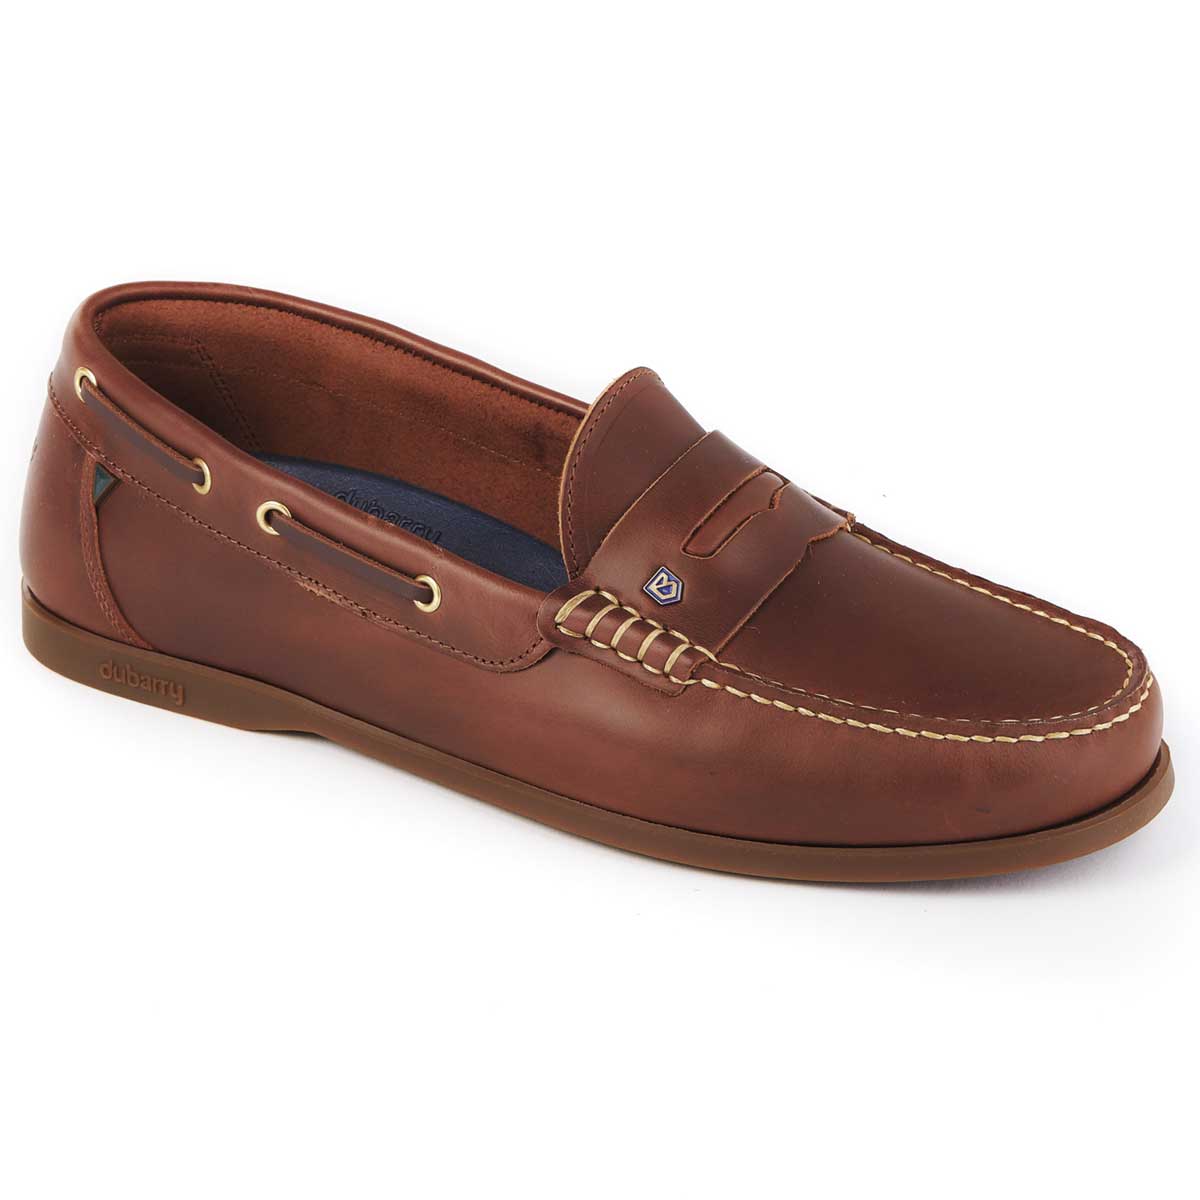 30% OFF DUBARRY Men's Spinnaker Loafer Deck Shoes - Brown - Size: UK 11 (EU 46)